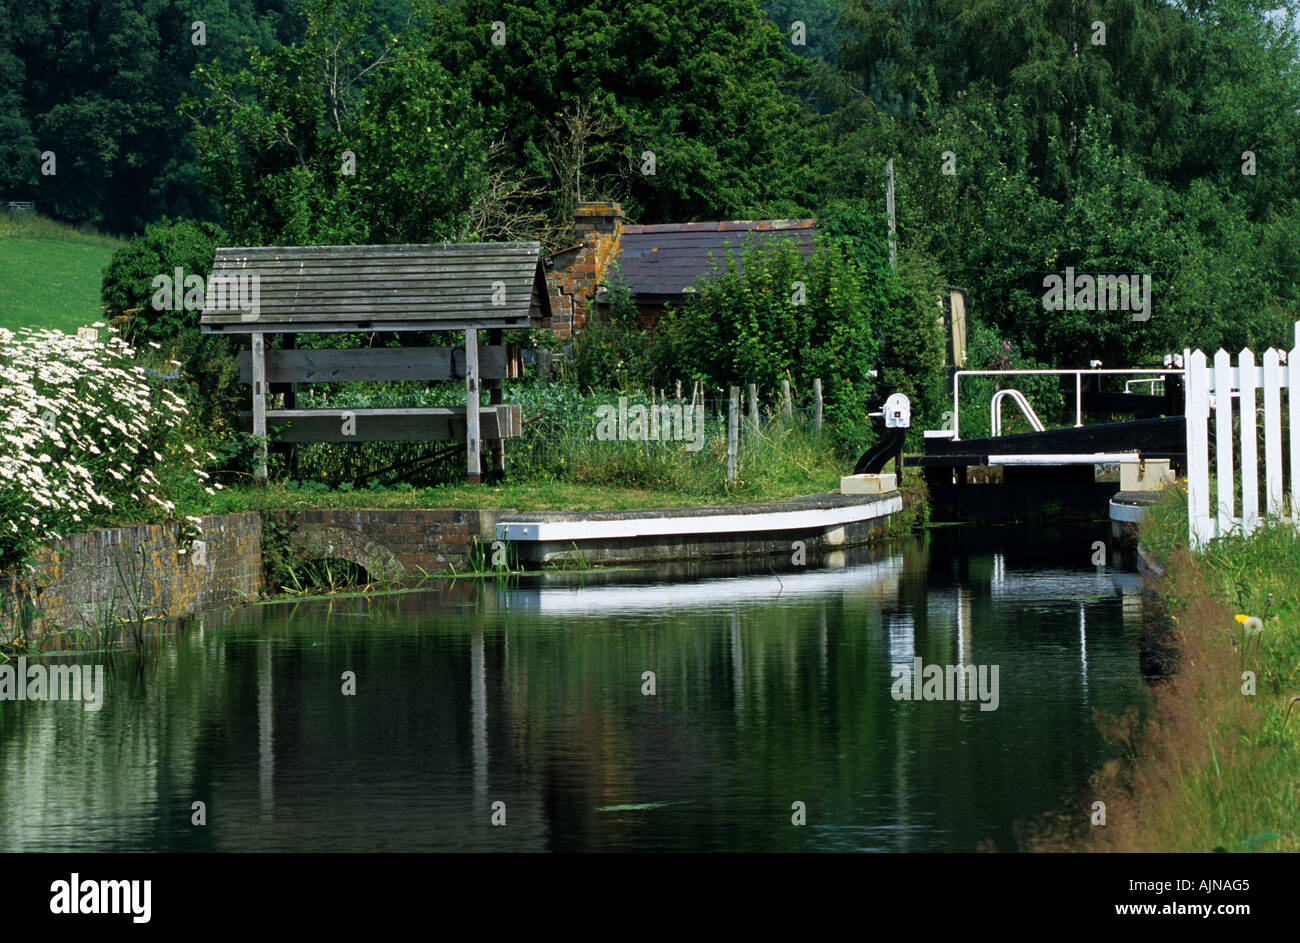 Verrouillage du fond of Berriew sur le Canal de Montgomery, une partie isolée du canal par la circulation des bateaux non utilisés. Powys, Pays de Galles, Royaume-Uni. Banque D'Images